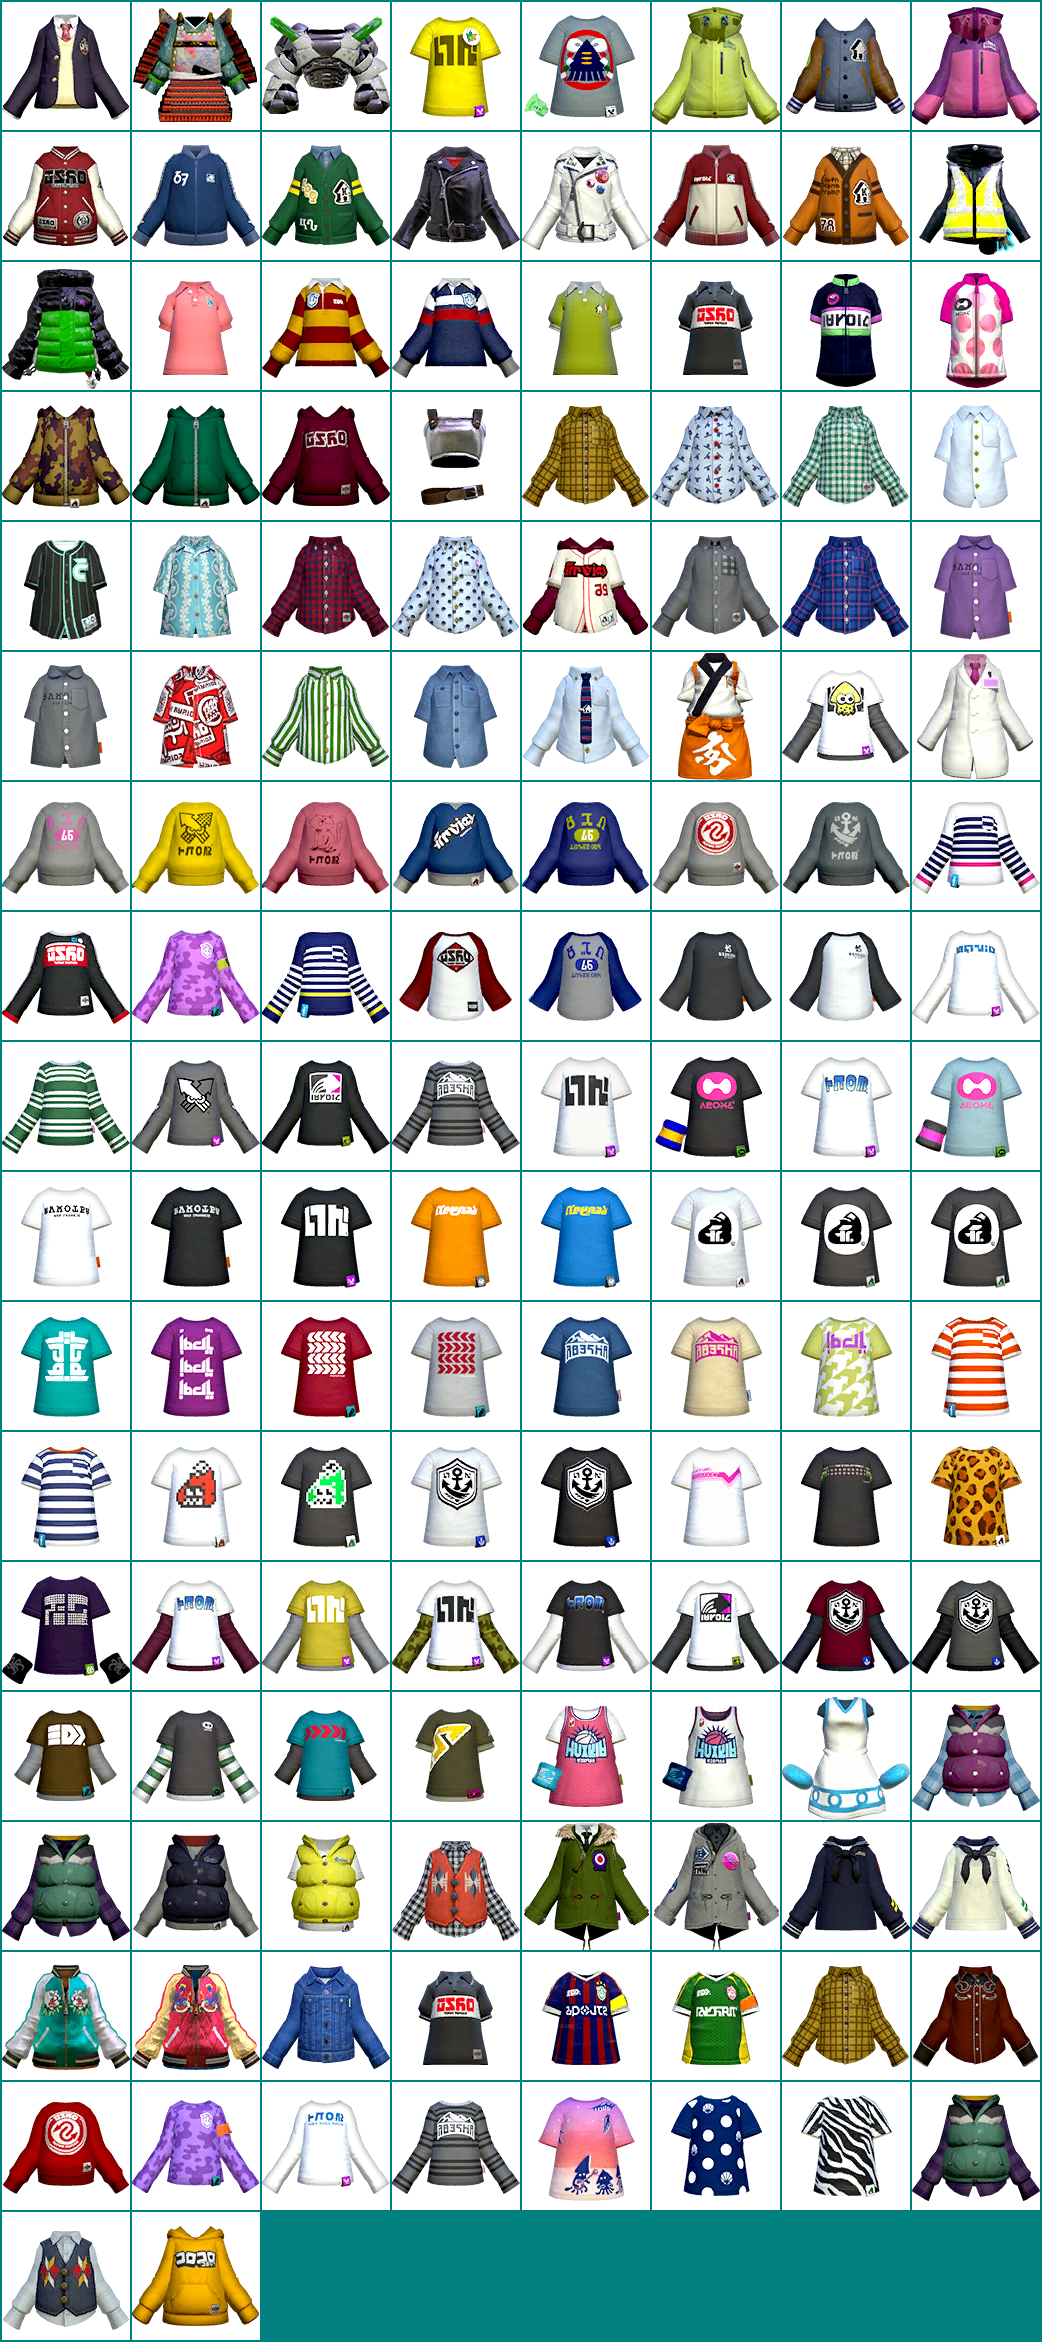 Splatoon - Clothing Icons